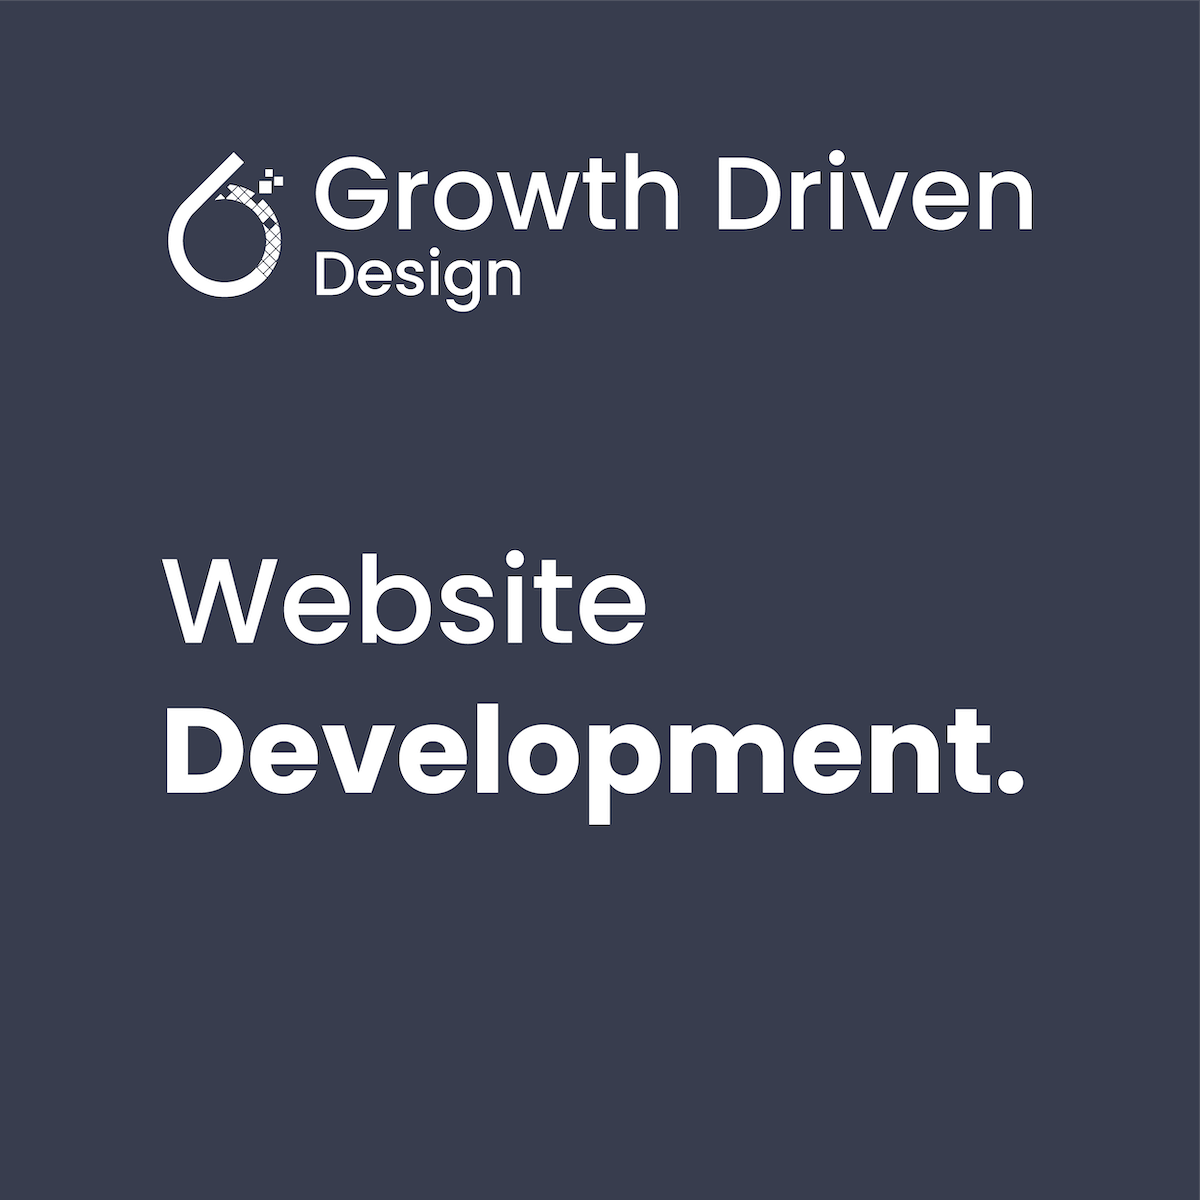 6teen30 Digital - Growth Driven Design - Website Development